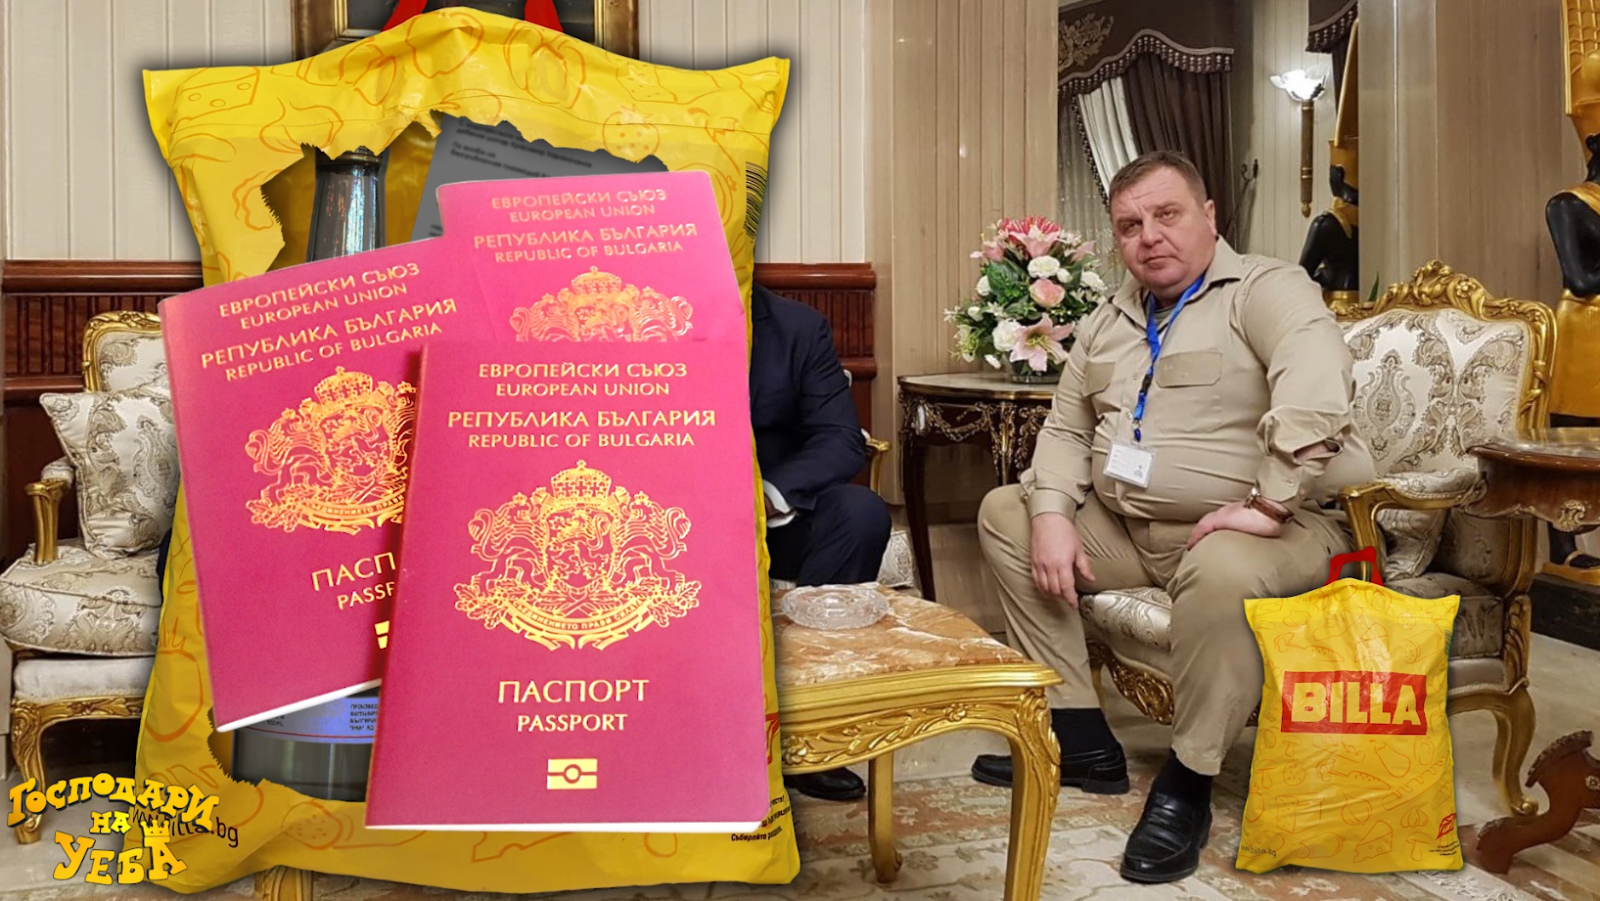 Най-накрая разбрахме какво носи Каракачанов в прословутата торбичка (Господари на Уеба)